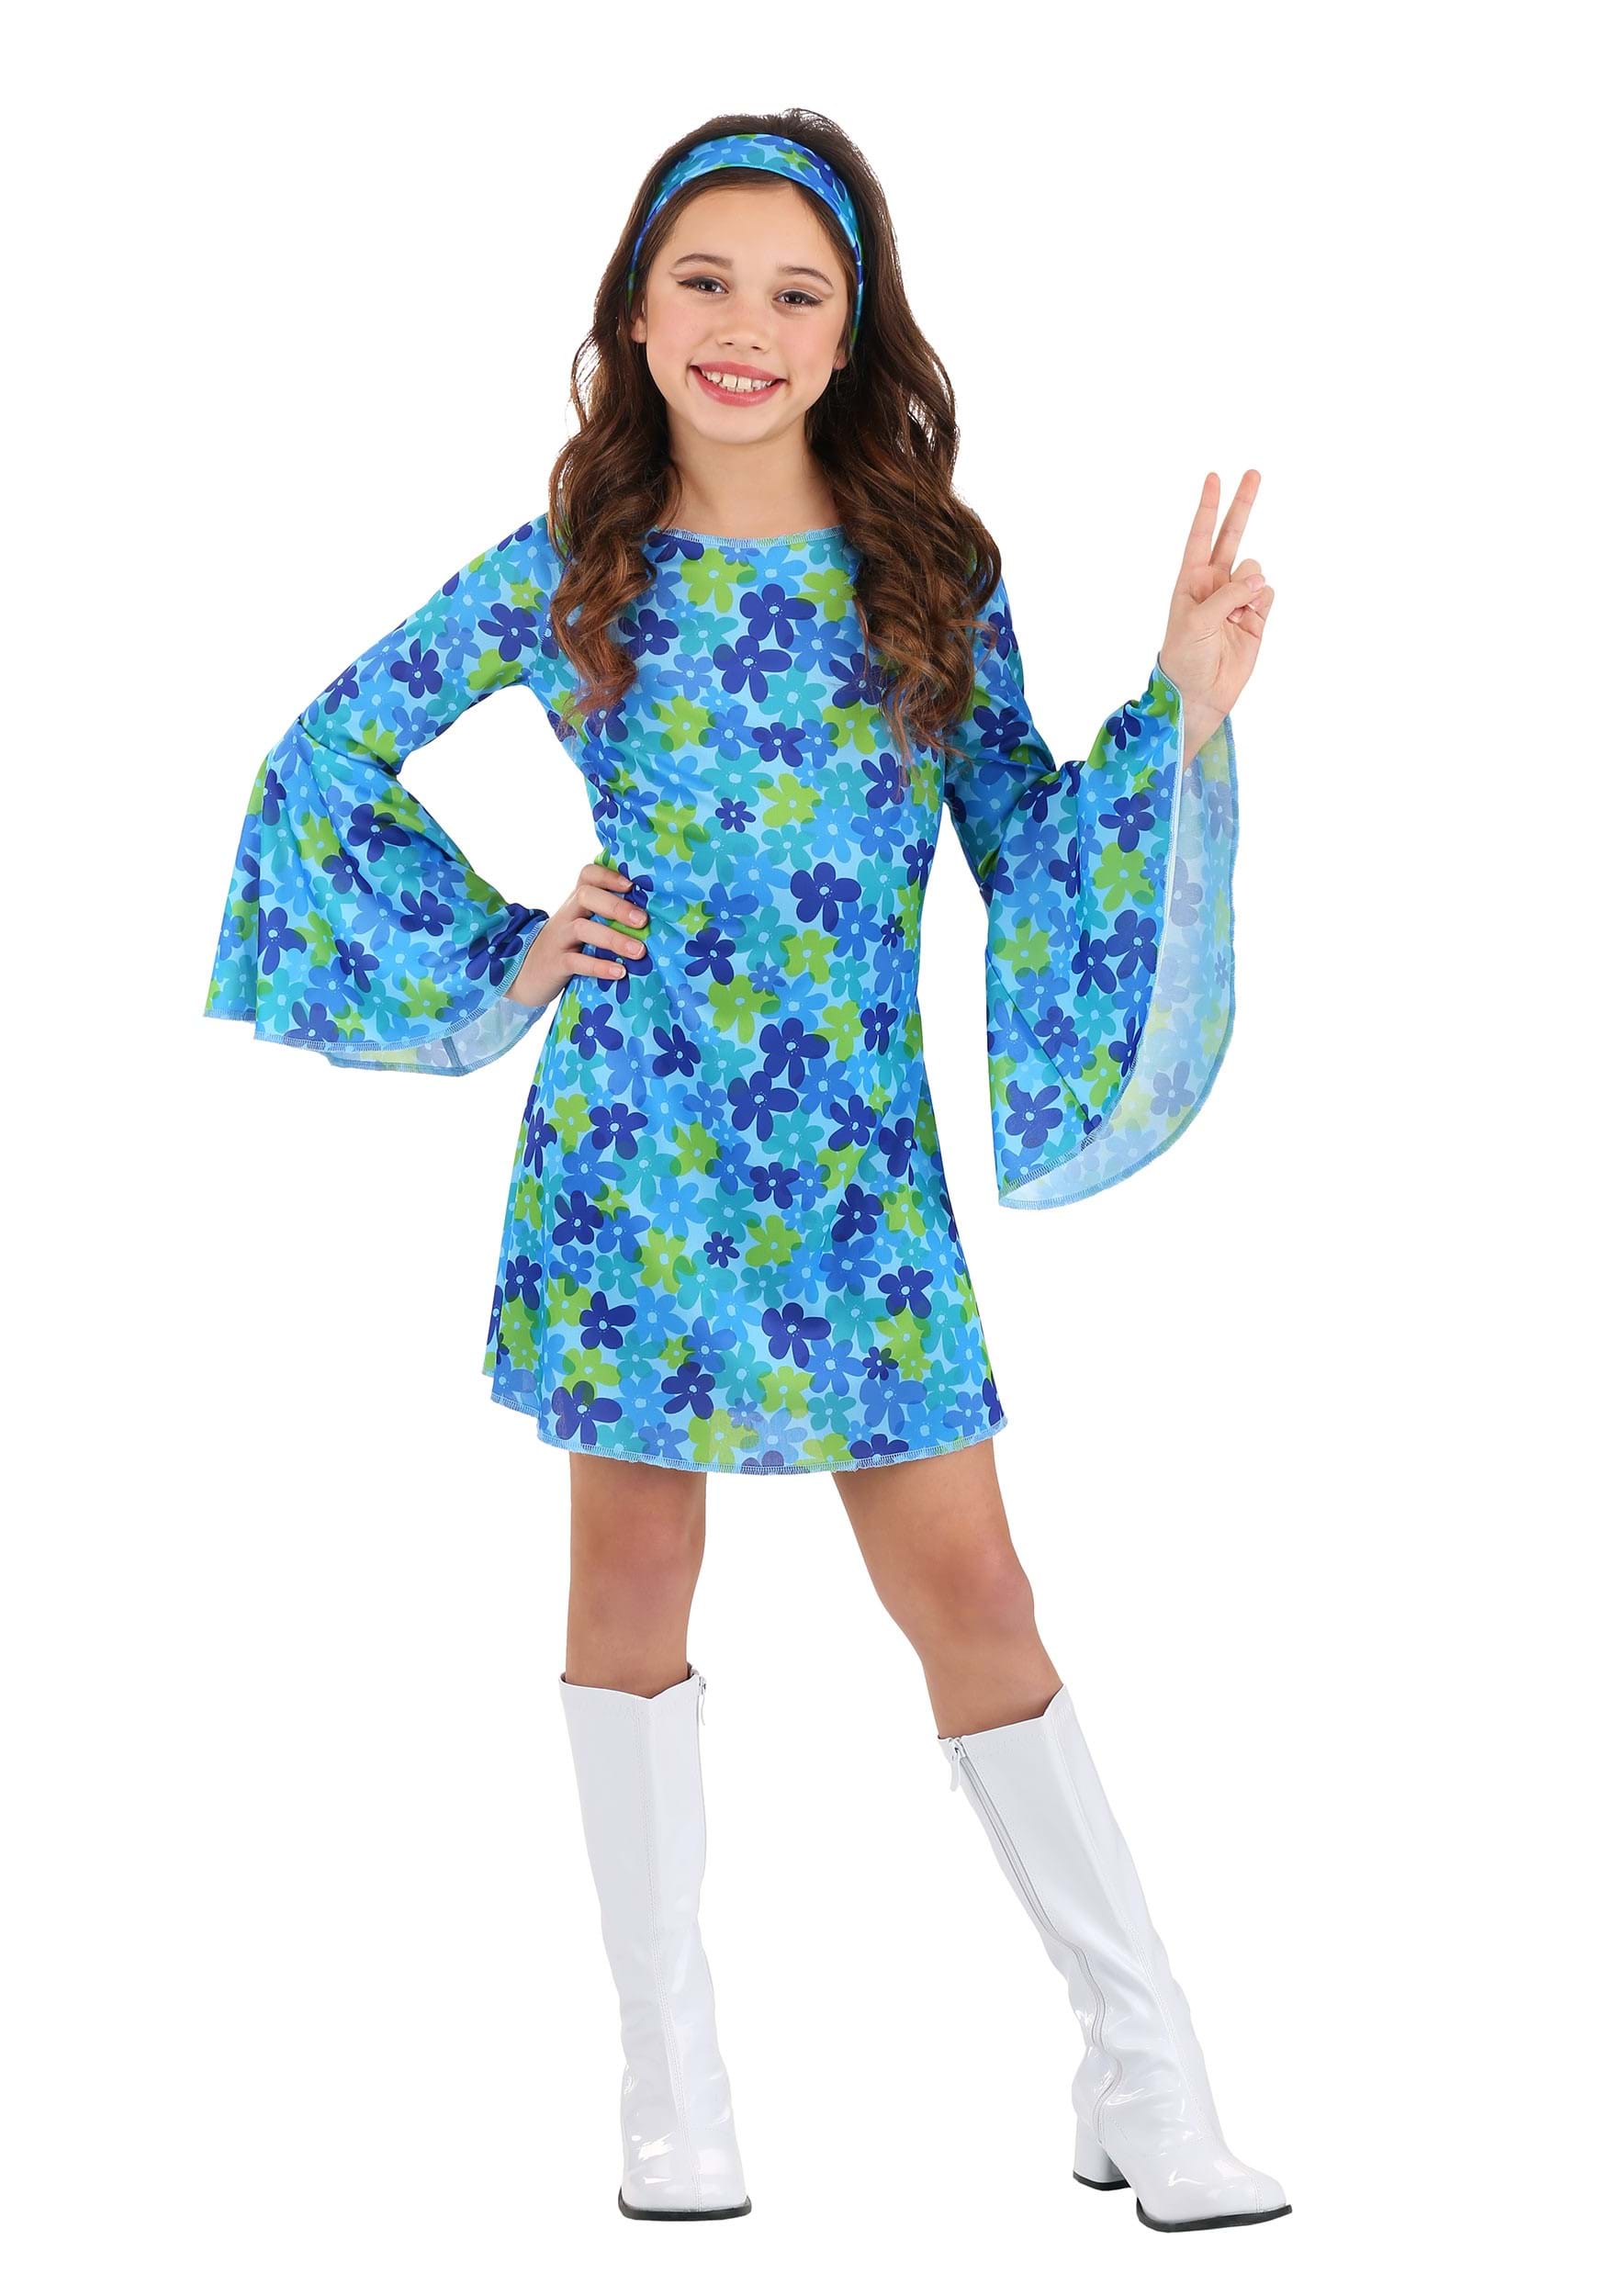 Photos - Fancy Dress Winsun Dress FUN Costumes 70s Wild Flower Girl's Dress Costume Blue/Green 